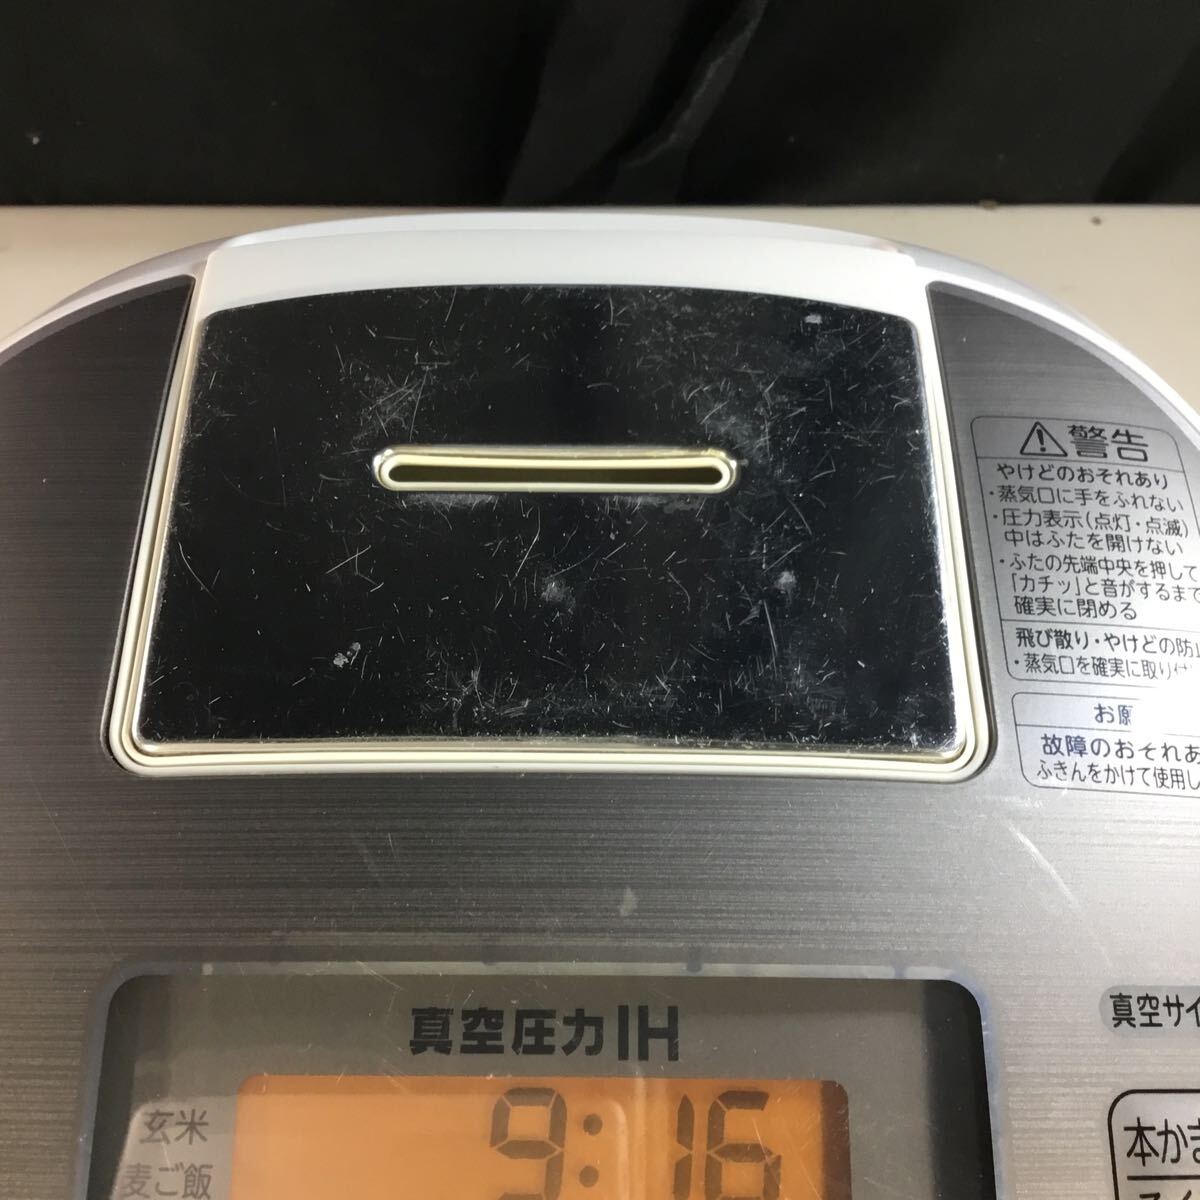 【送料無料】(051760G) TOSHIBA RC-10VSL 2017年製 圧力IH炊飯ジャー 5.5合炊き 中古品_画像2